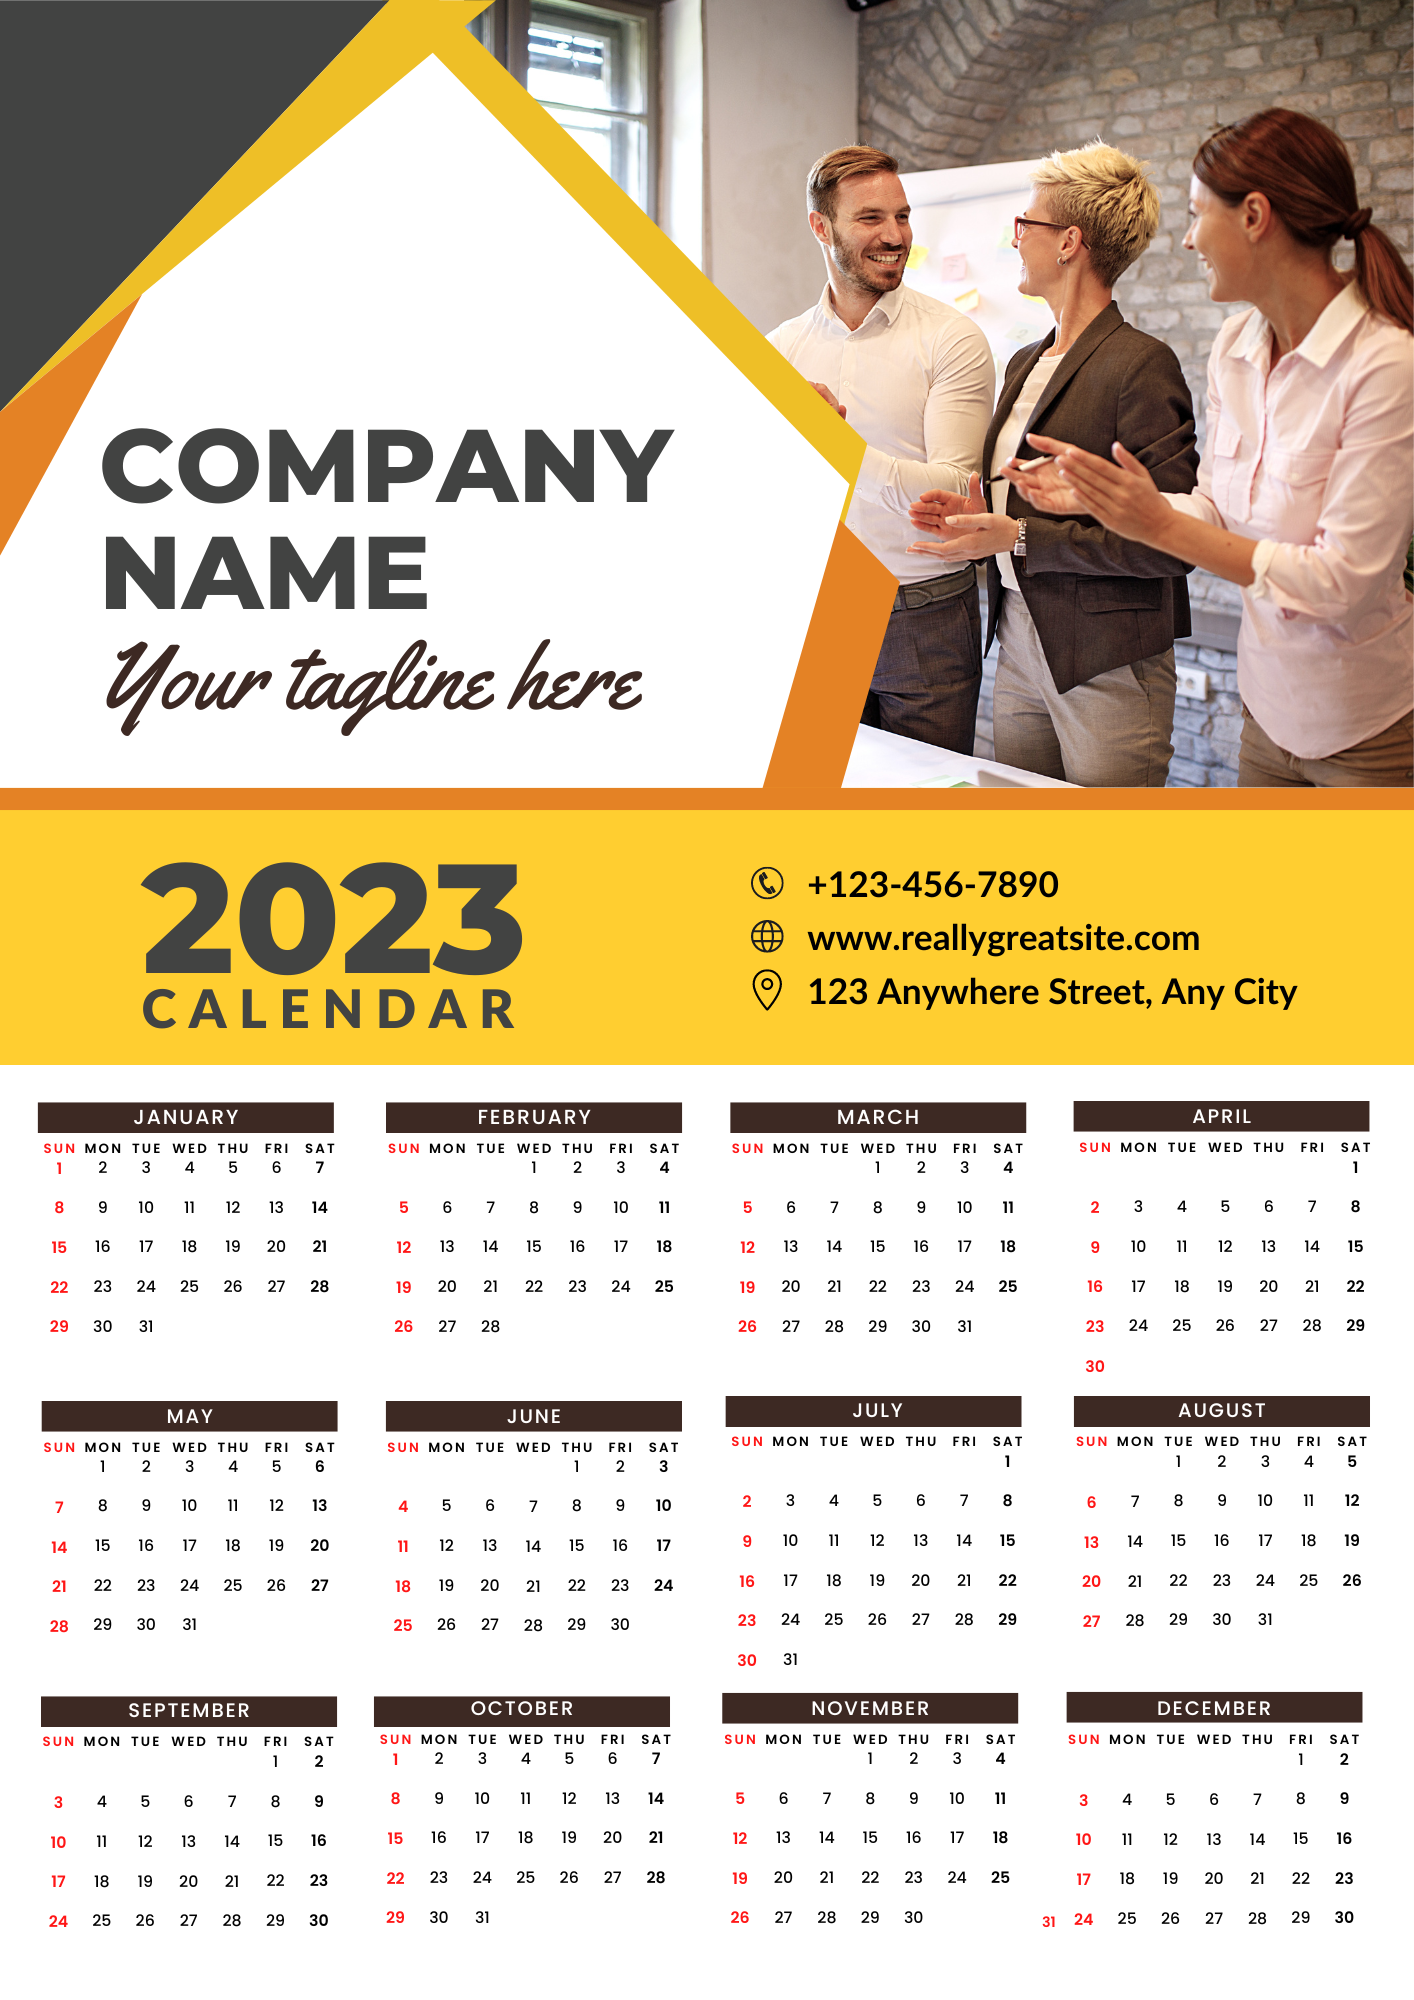 Annual Calendar 2023